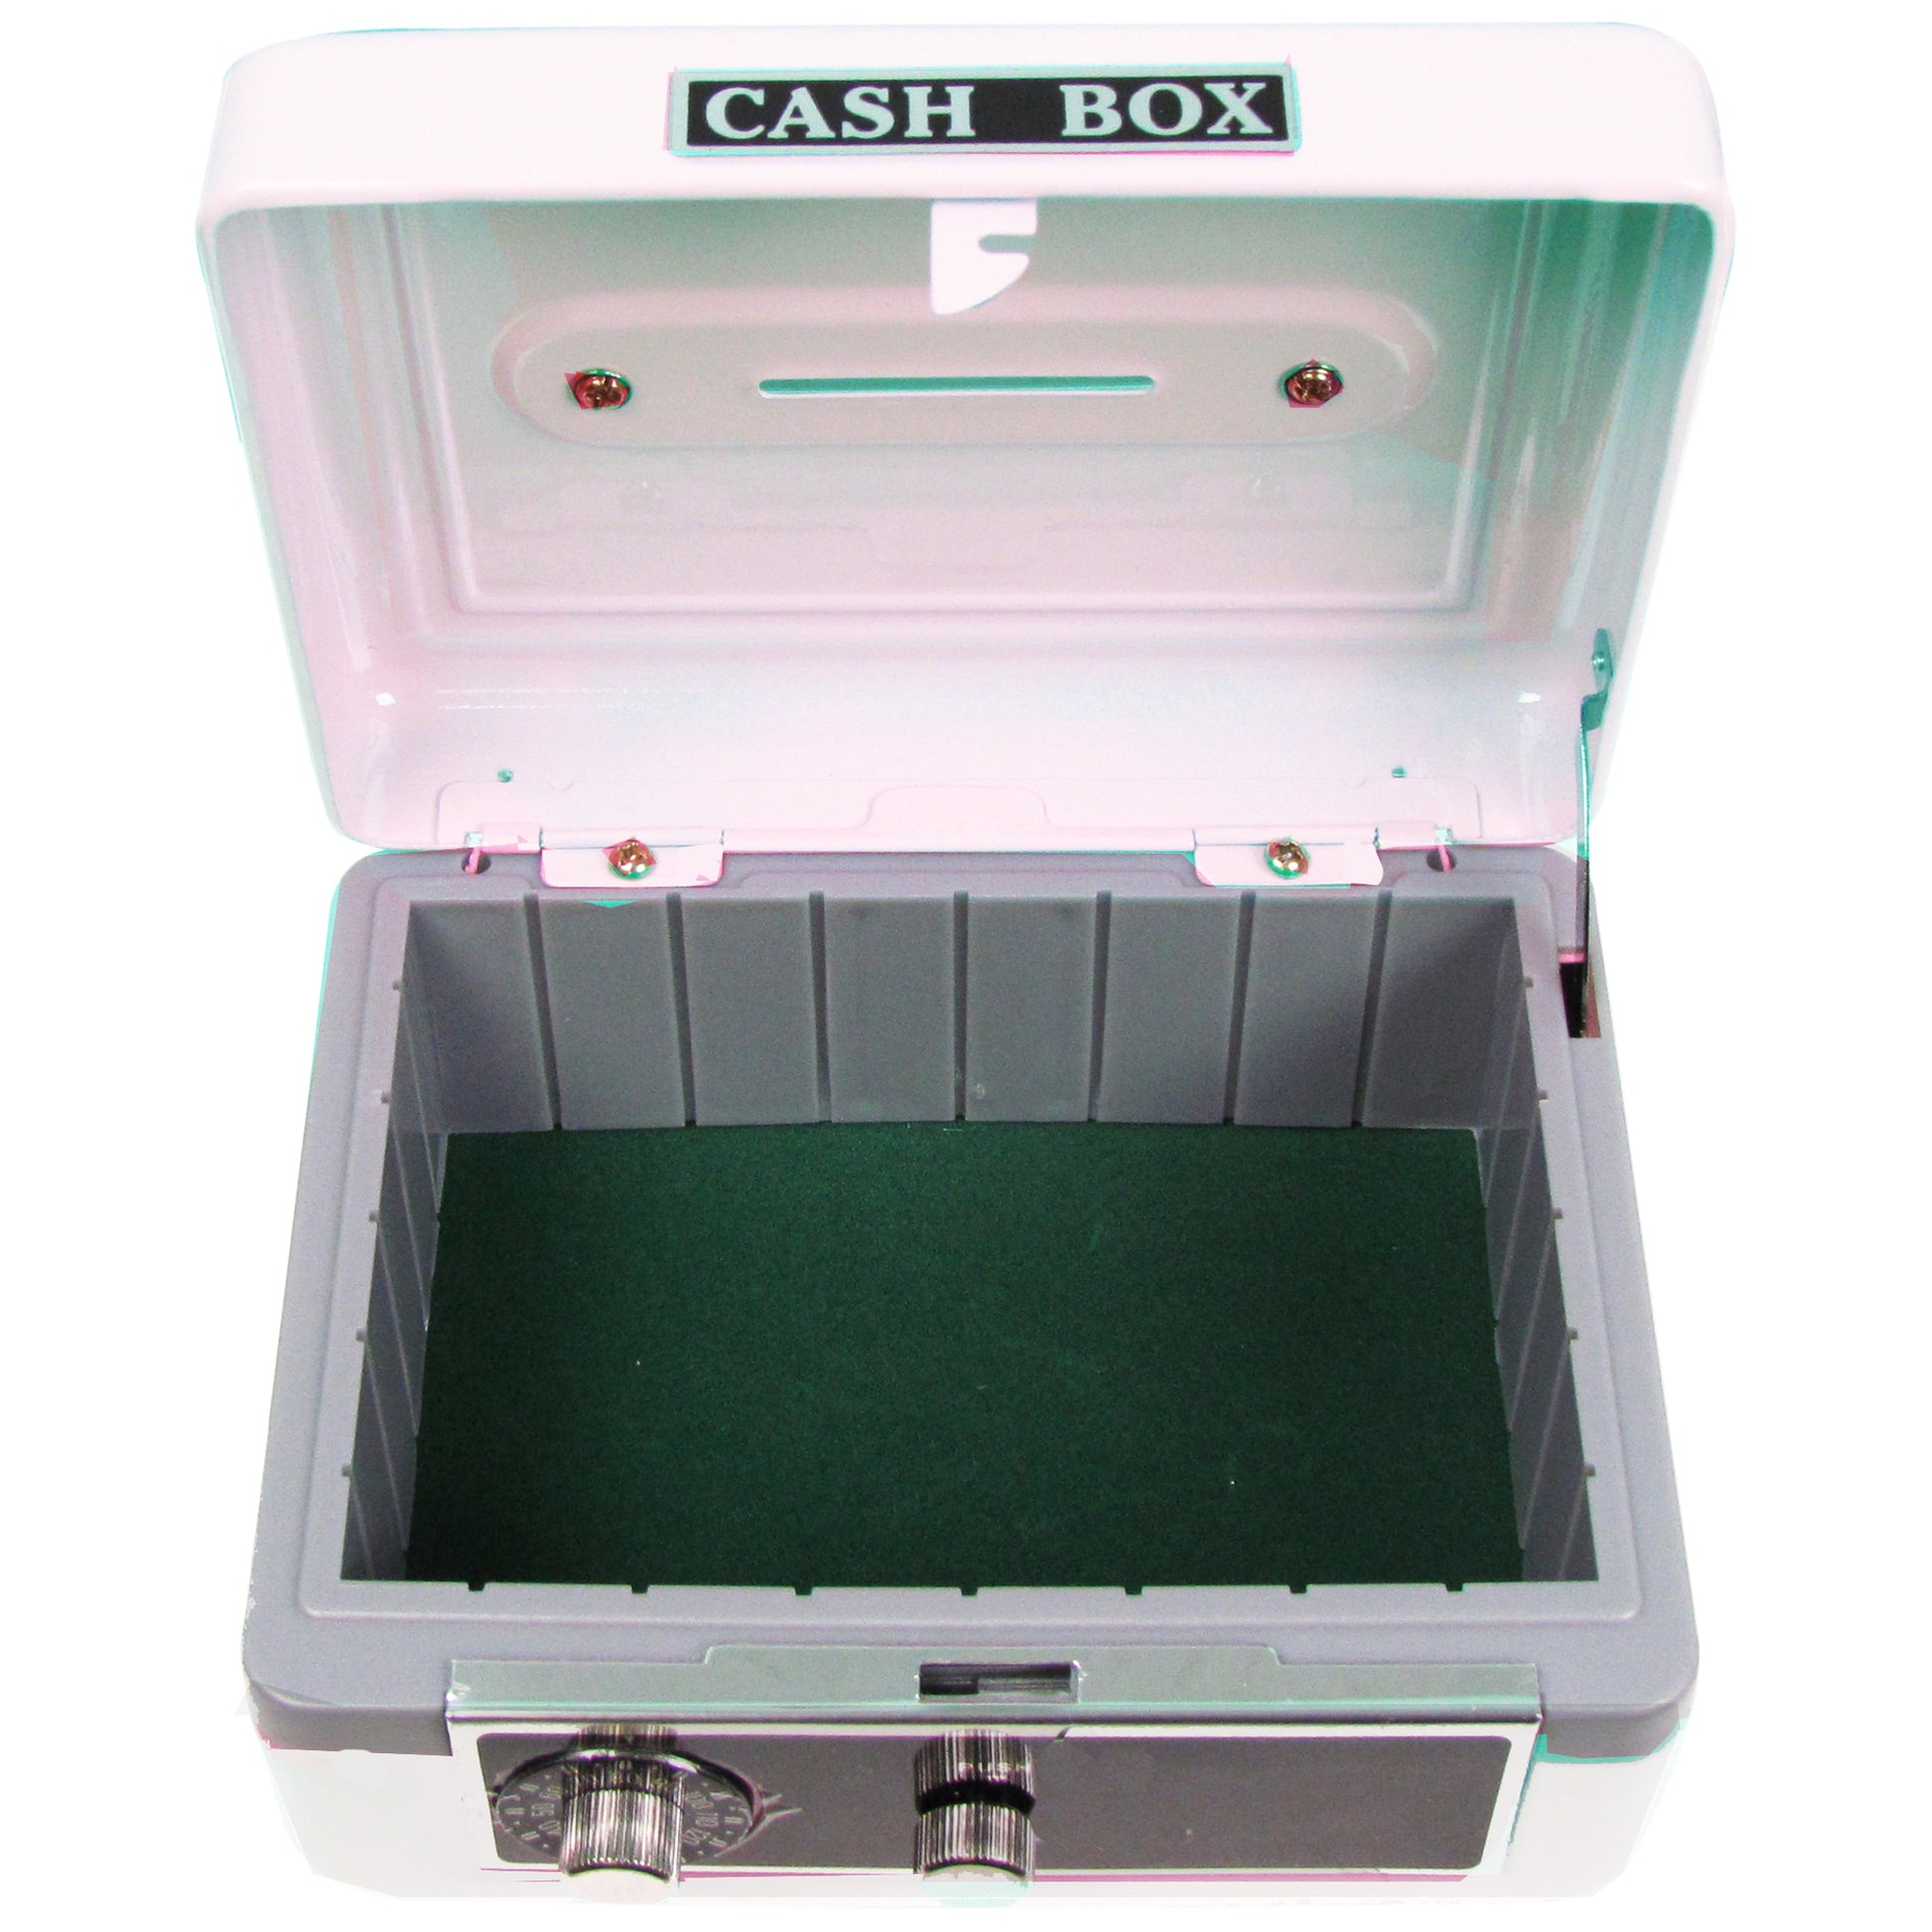 Personalized White Cash Box with Train design